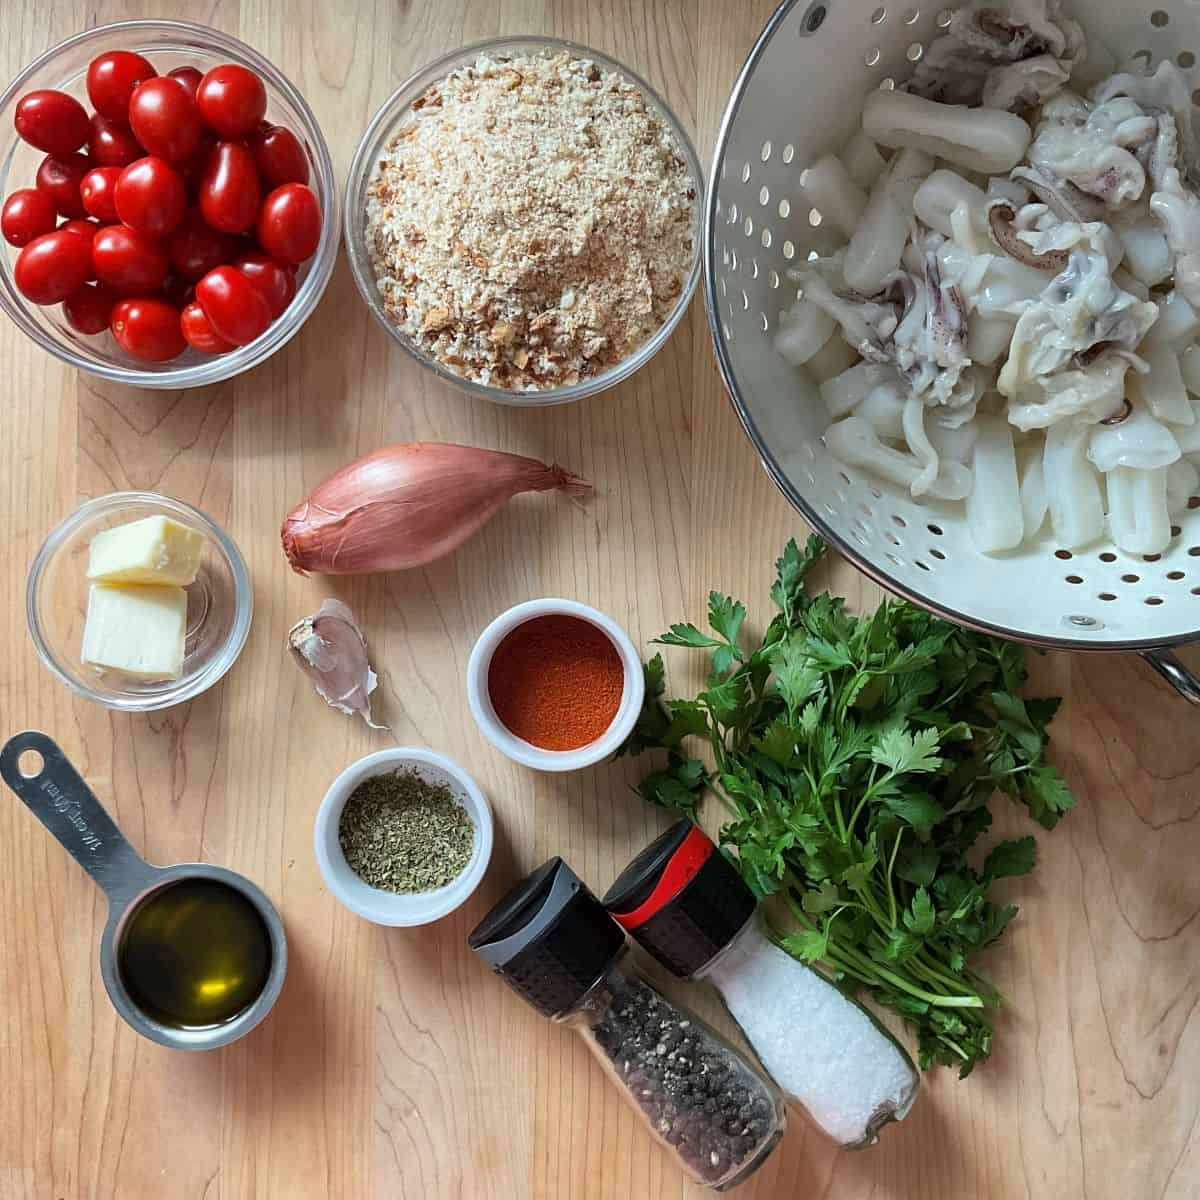 Ingredients to make a calamari recipe.